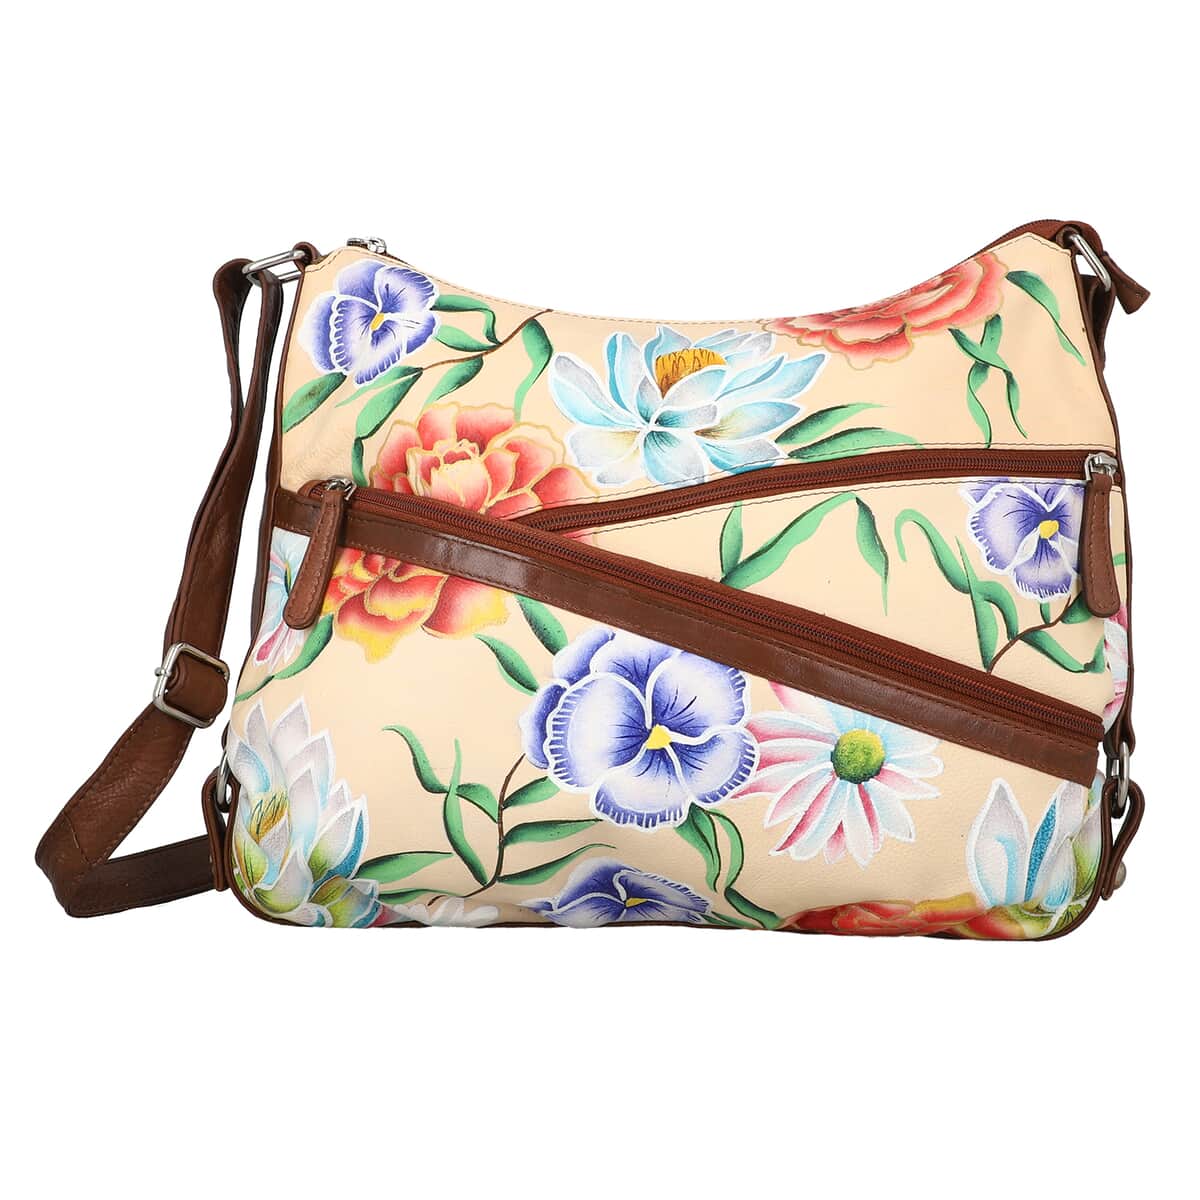 Sukriti Light Brown Floral Pattern Genuine Leather Hobo Crossbody Bag with Adjustable Shoulder Strap image number 0